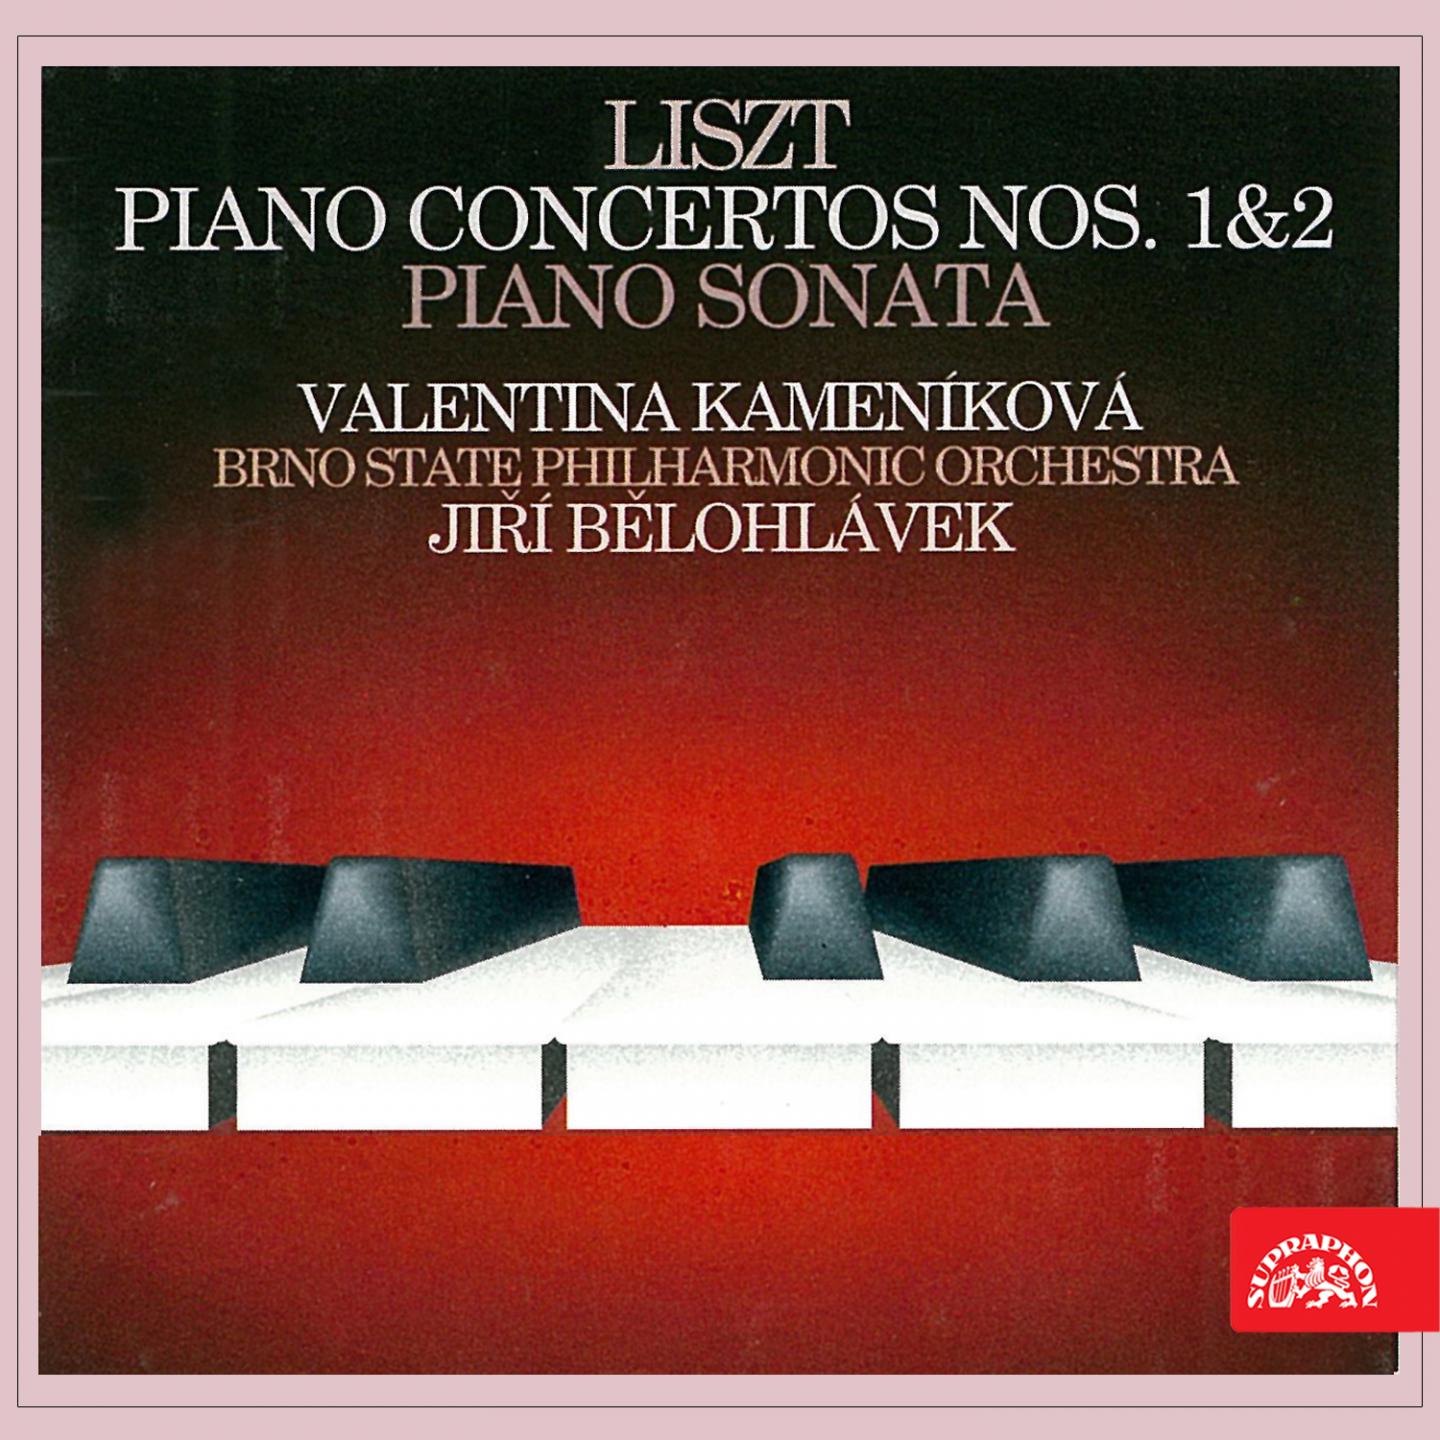 Piano Concerto No. 2 in A Major, S. 125